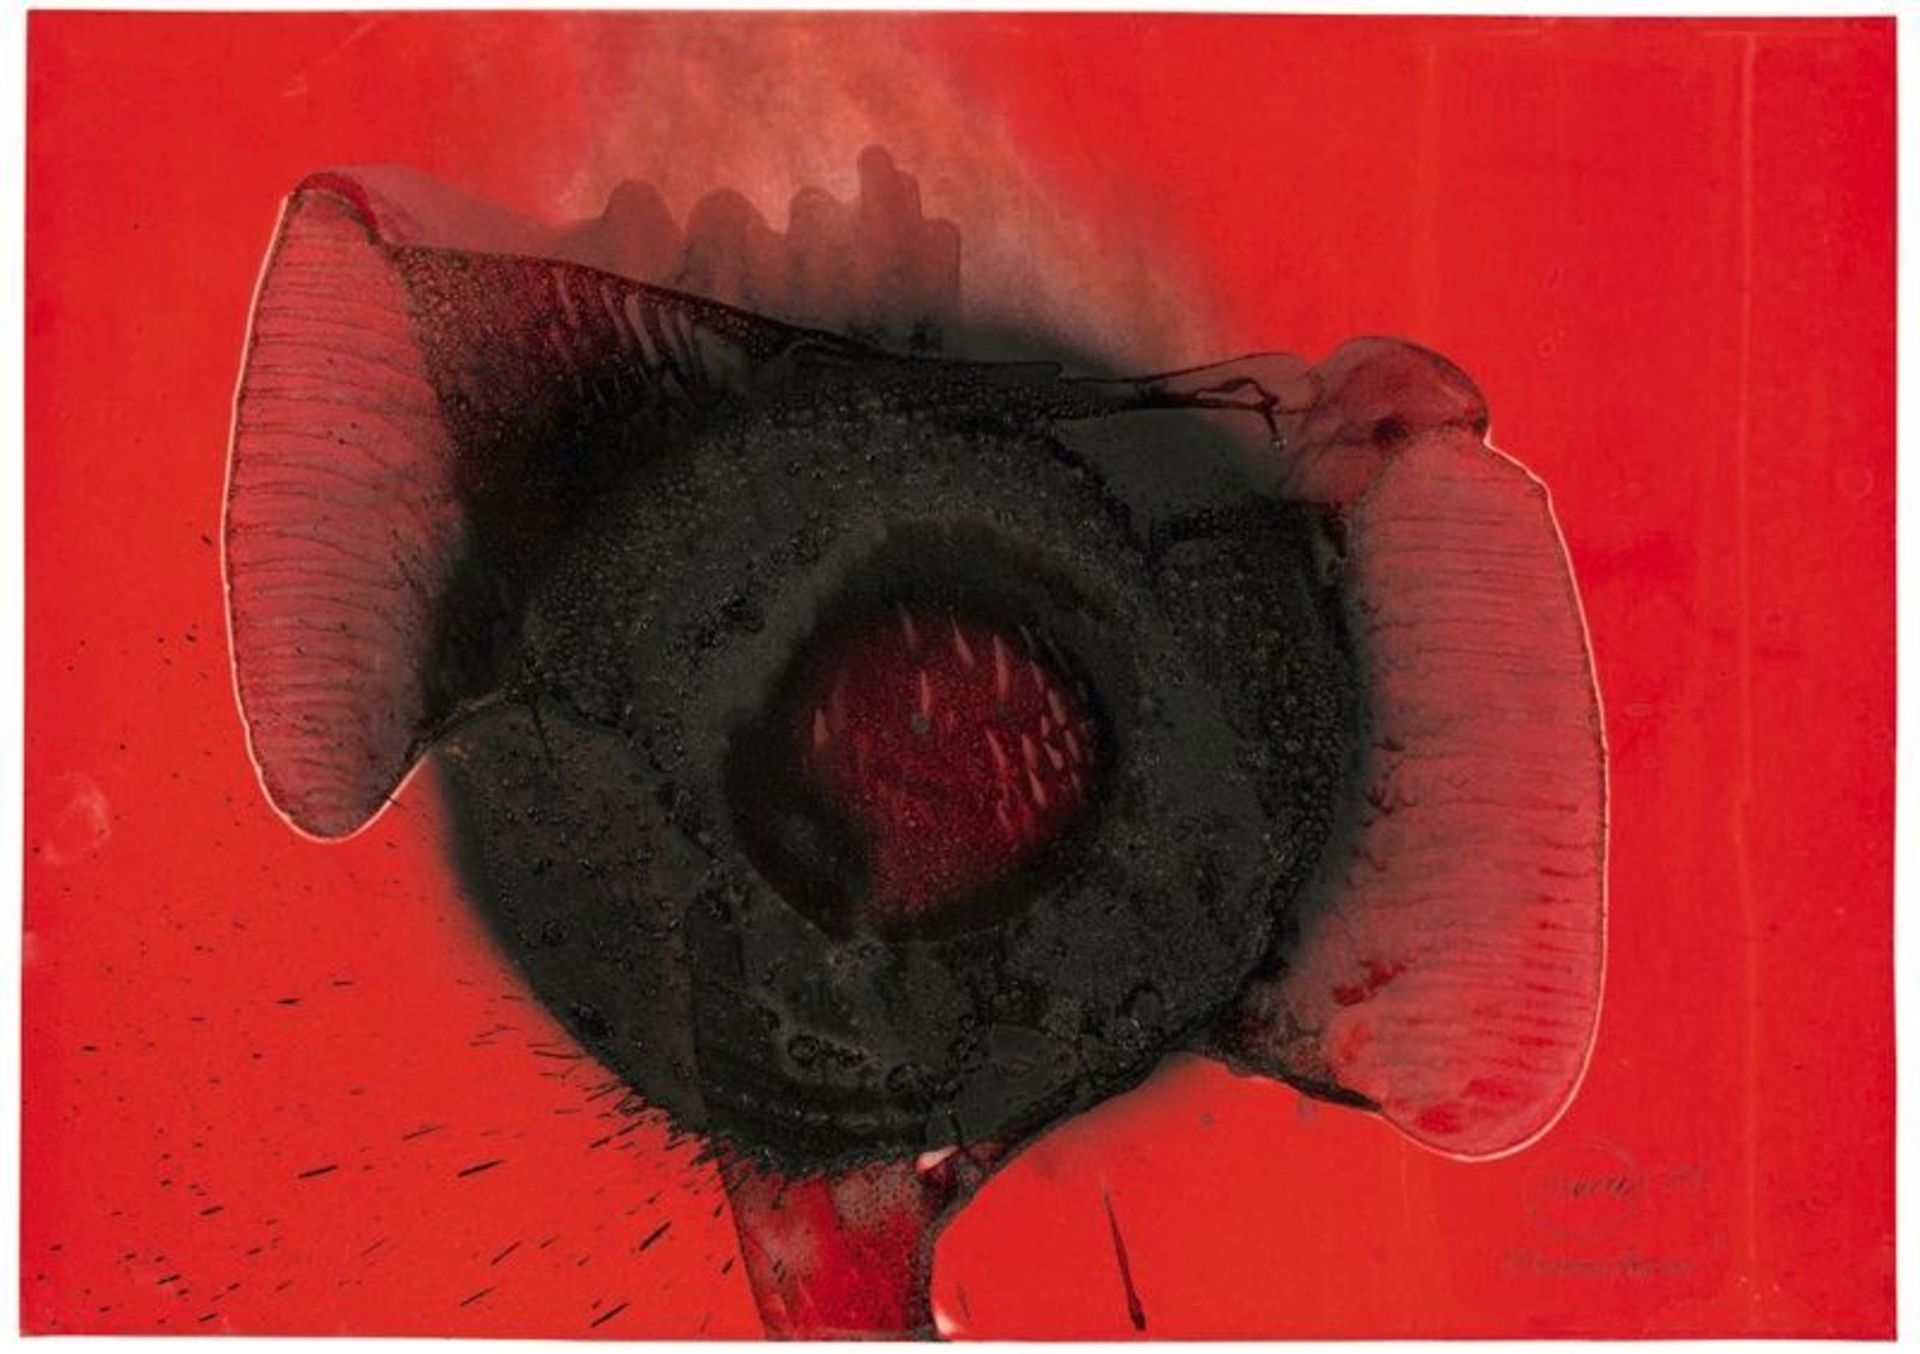 Otto Piene (Laasphe, Westphalia 1928 – 2014 Berlin)  „OHRENSTERN“. 1981  Fire gouache on red